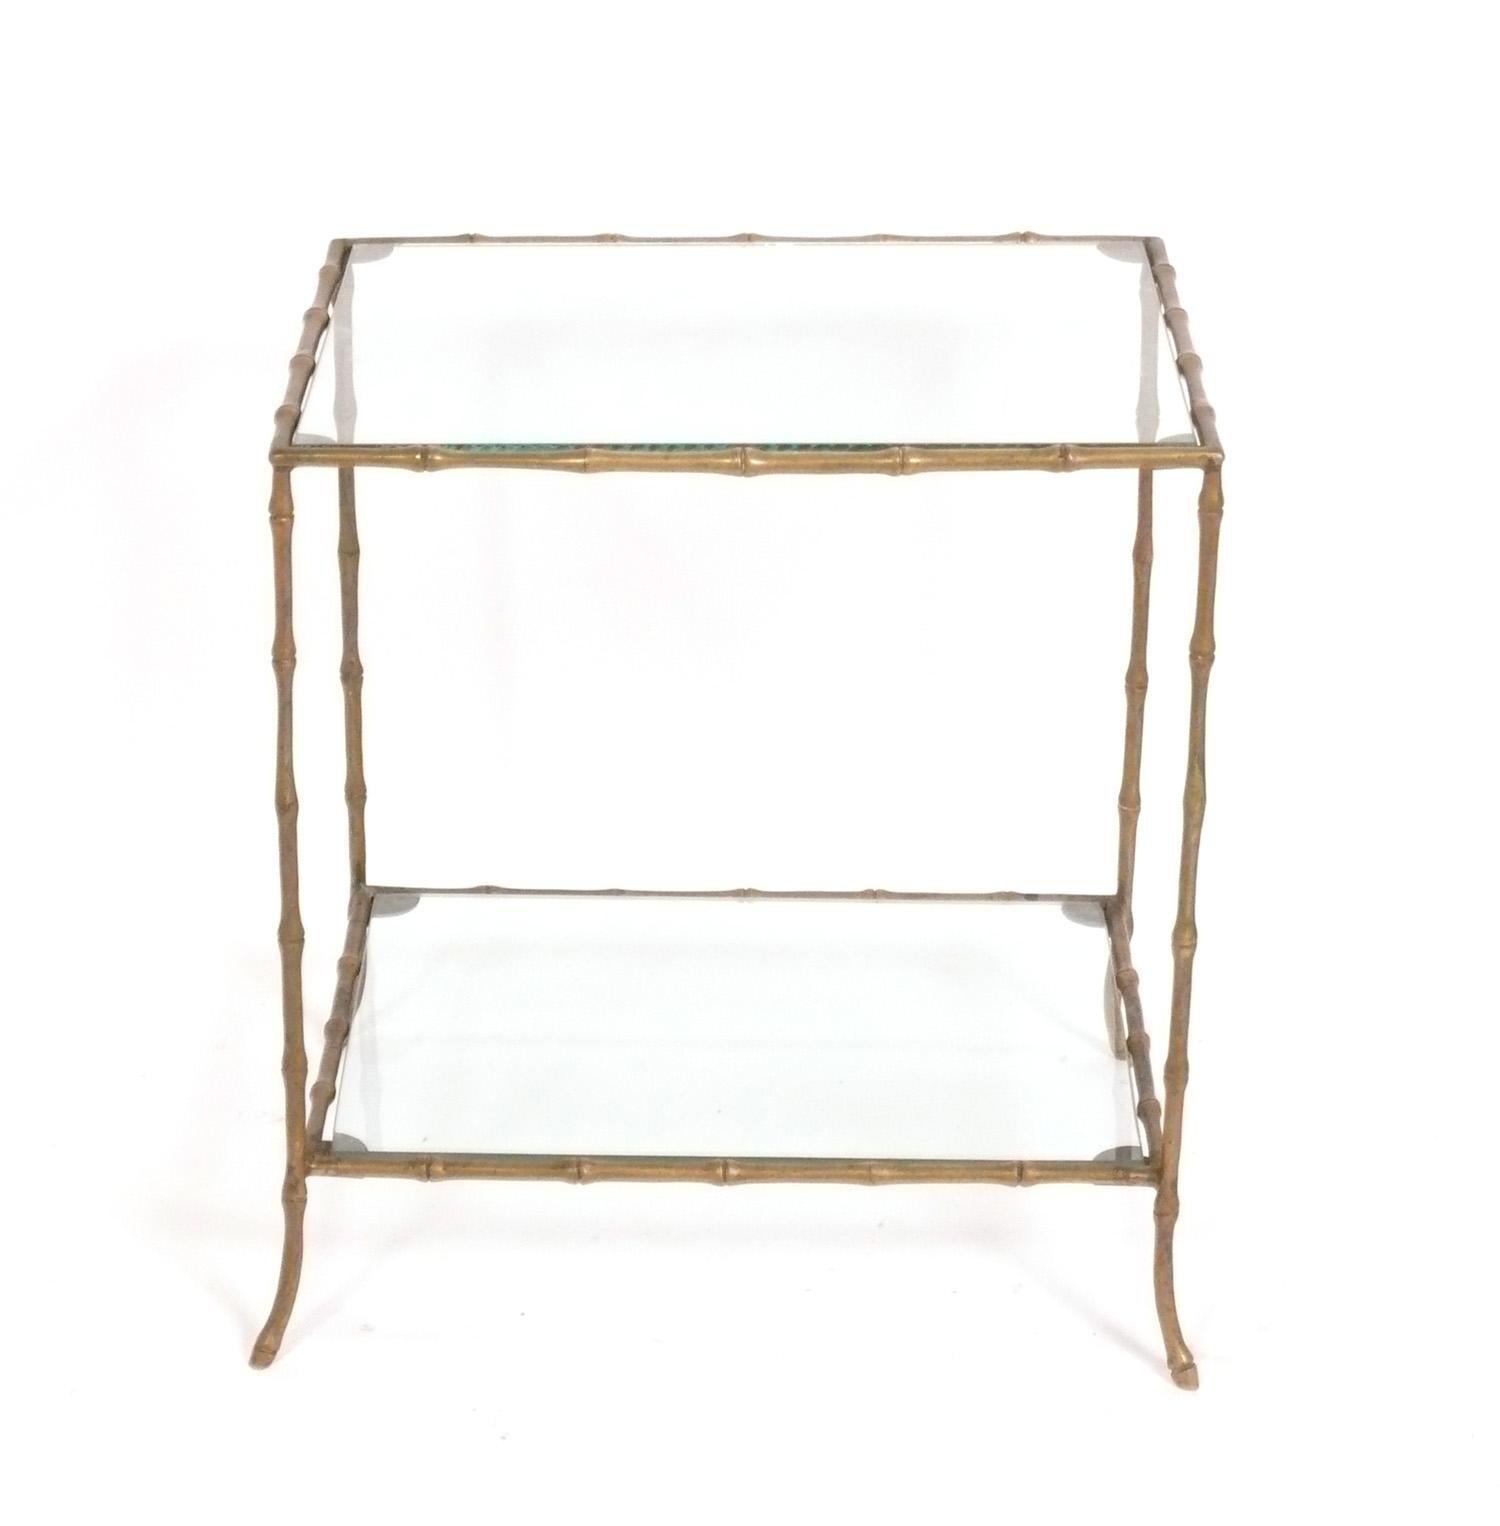 Eleganter Tisch aus Messing und Bambusimitat, zugeschrieben Maison Bagues, französisch, ca. 1960er Jahre. Das Messing hat eine warme Originalpatina. Dieser Tisch hat eine vielseitige Größe und kann als Beistelltisch, Beistelltisch oder als Bar im